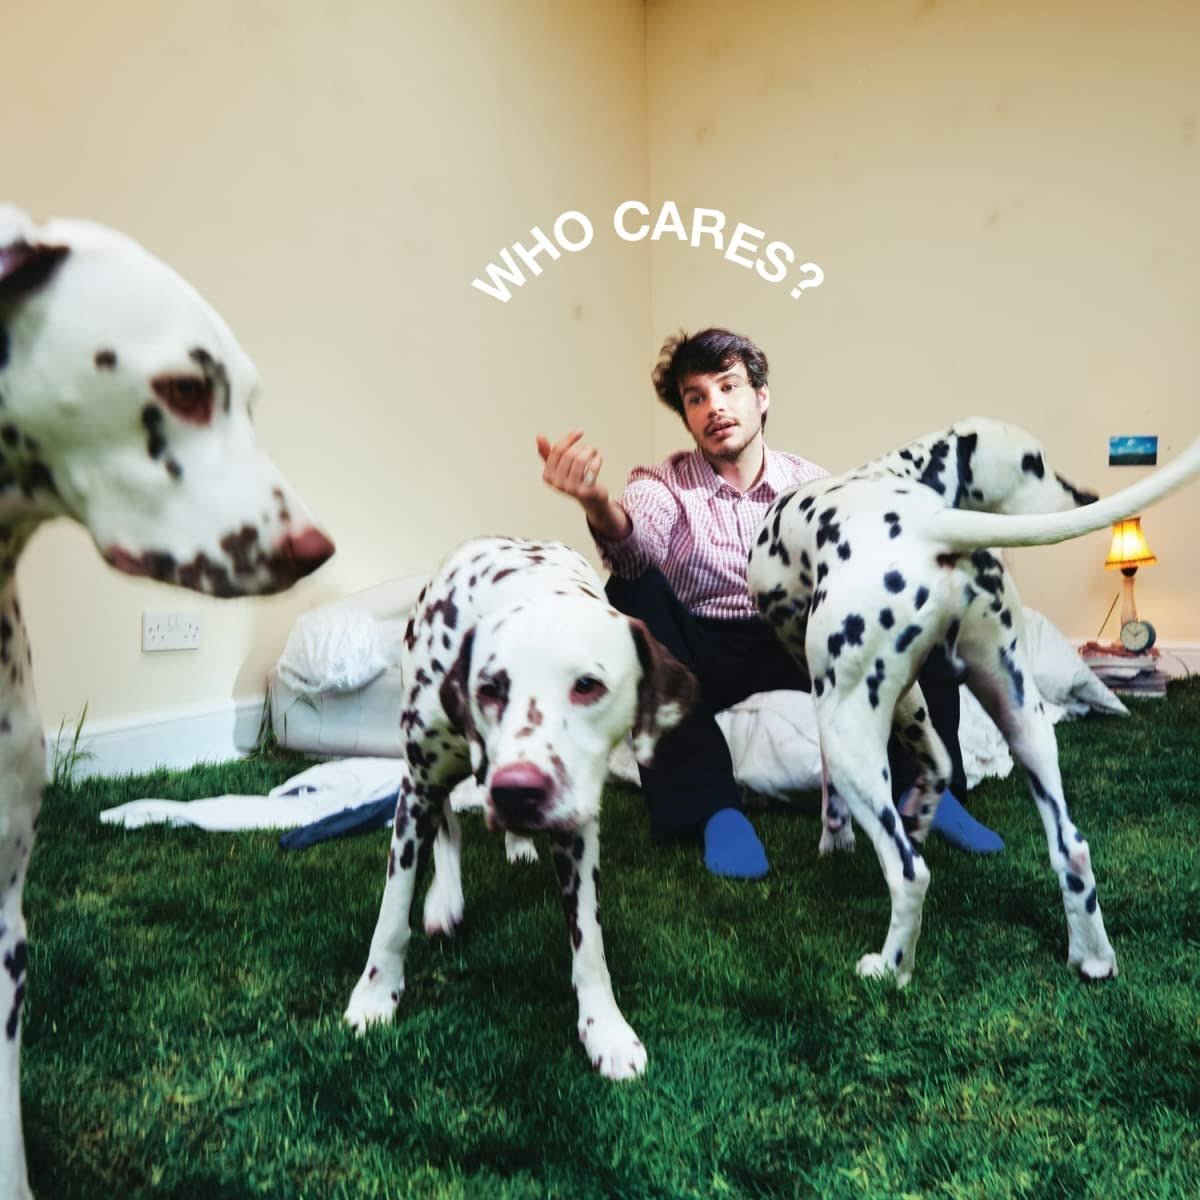 Rex Orange County / Who Cares? LP Vinyl